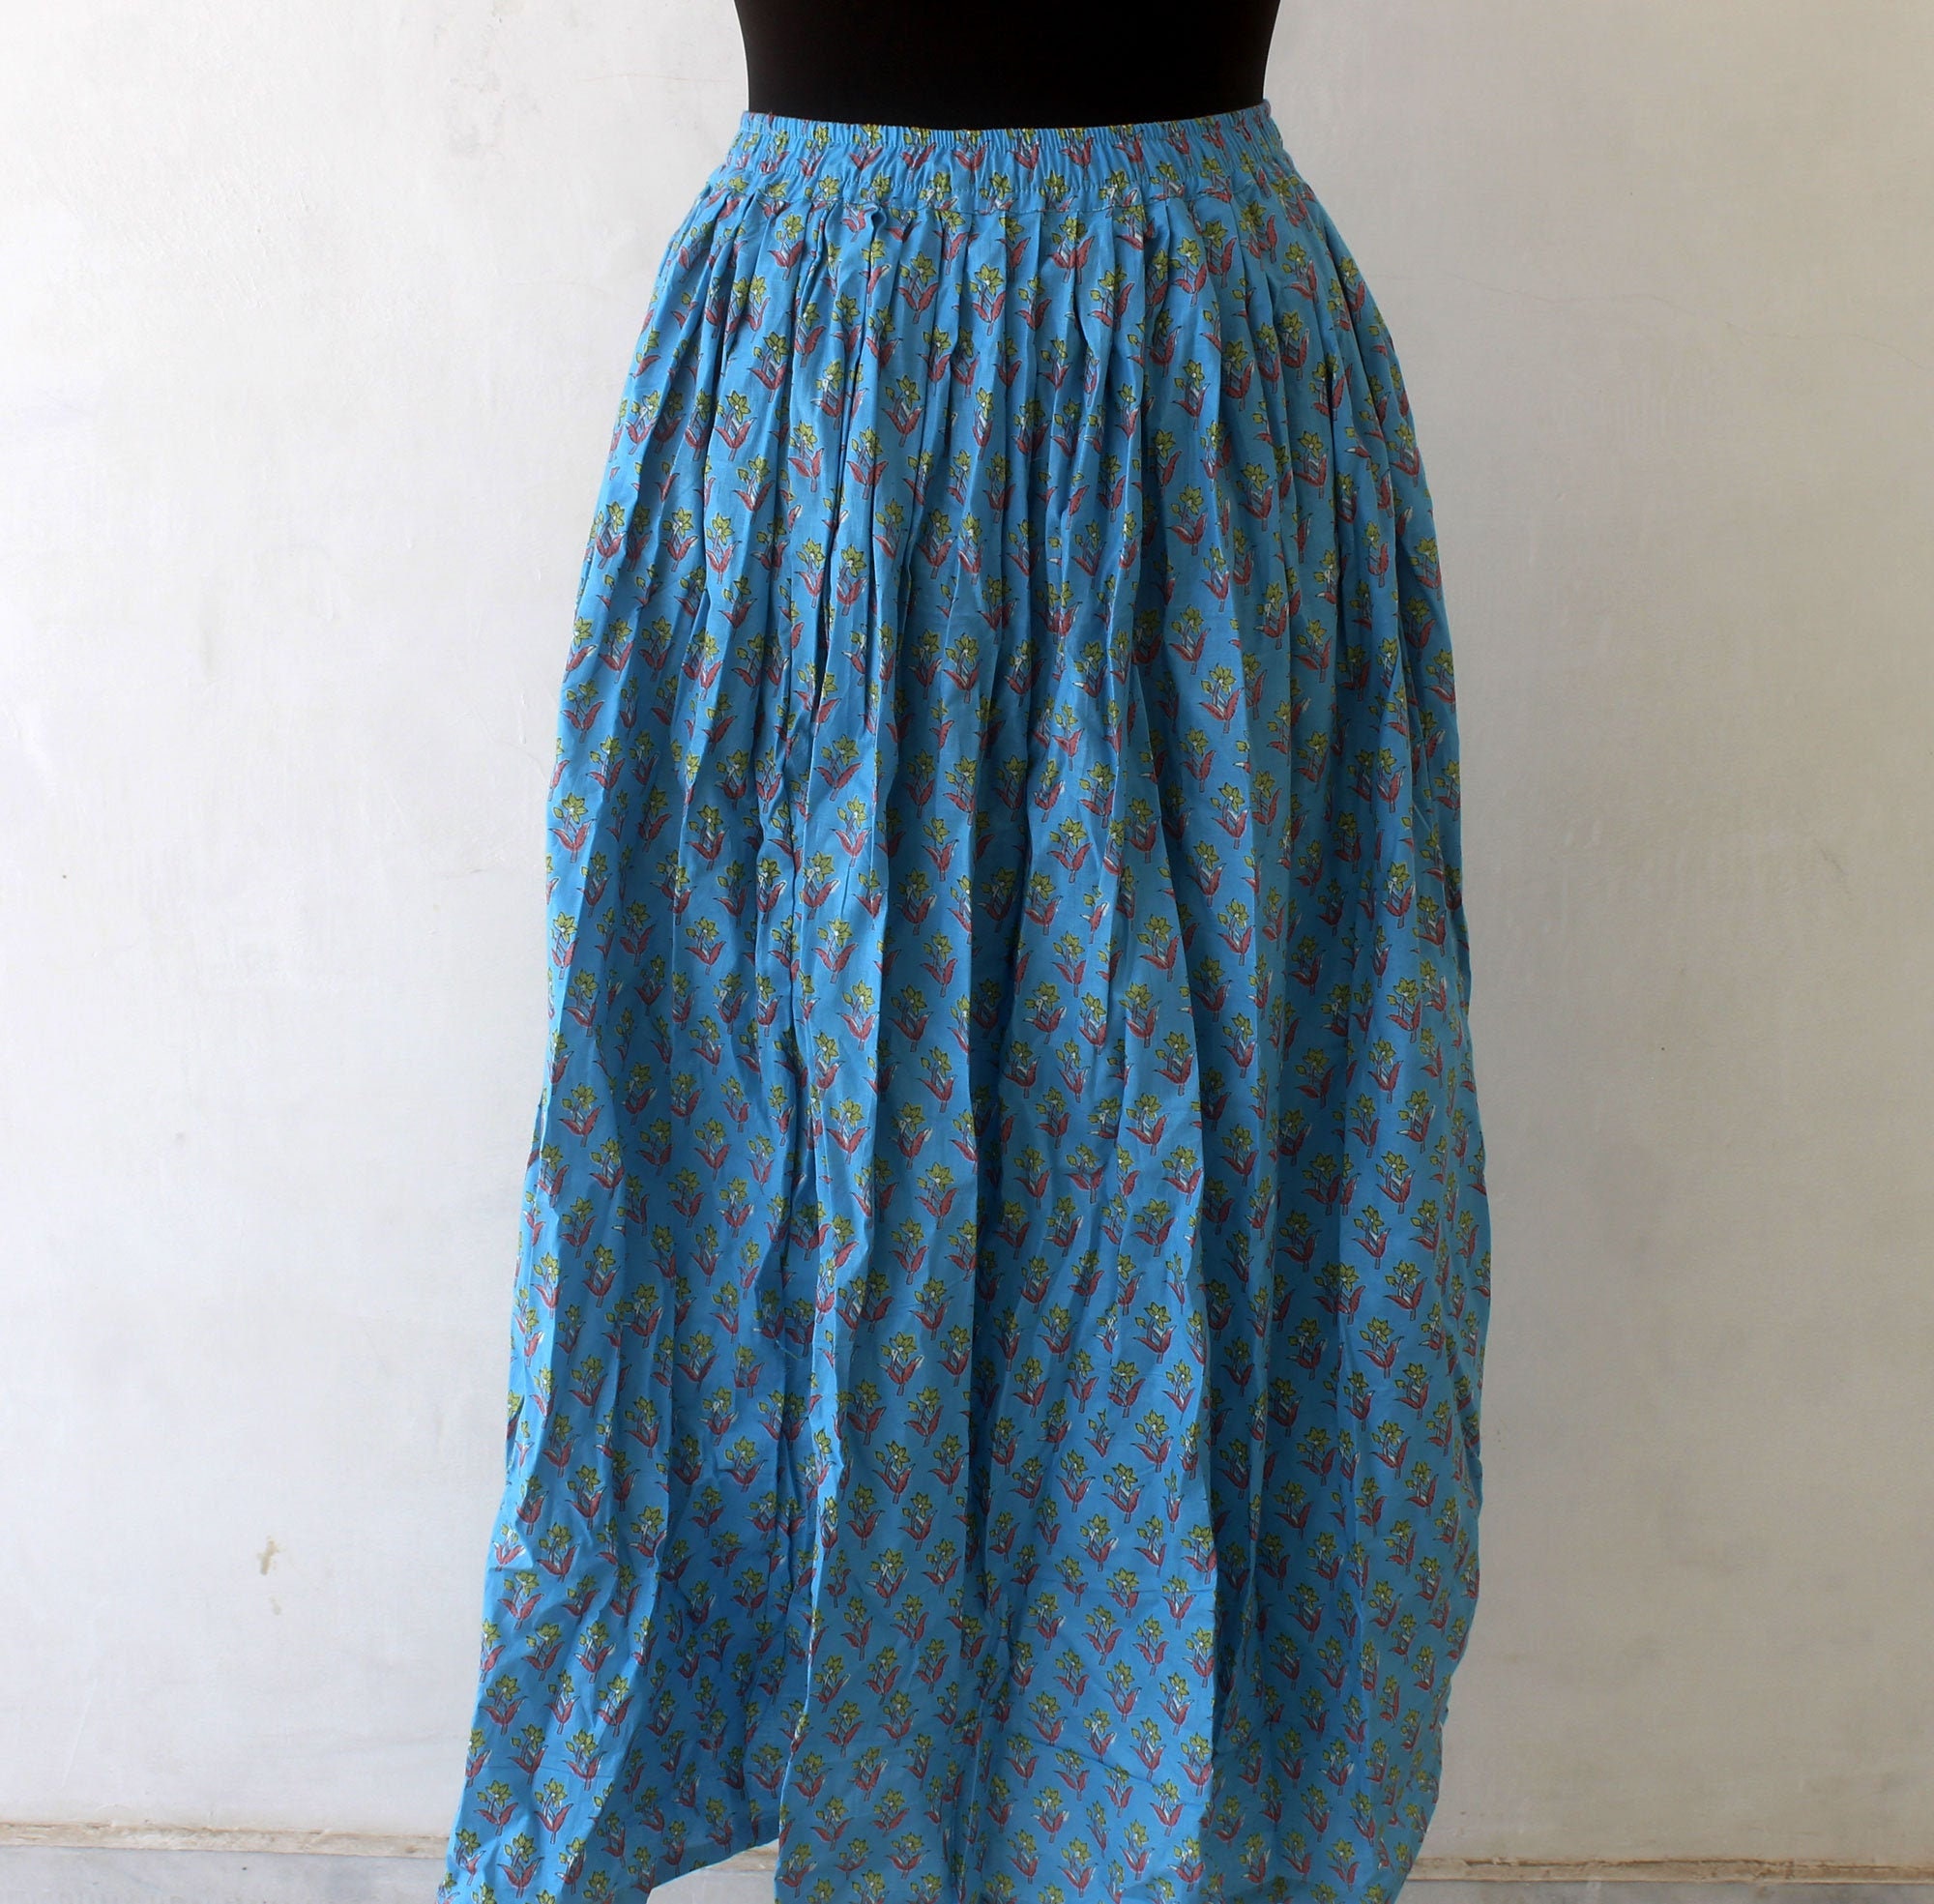 Elastic Waist Skirt Long Skirt Summer Cotton Skirt High | Etsy